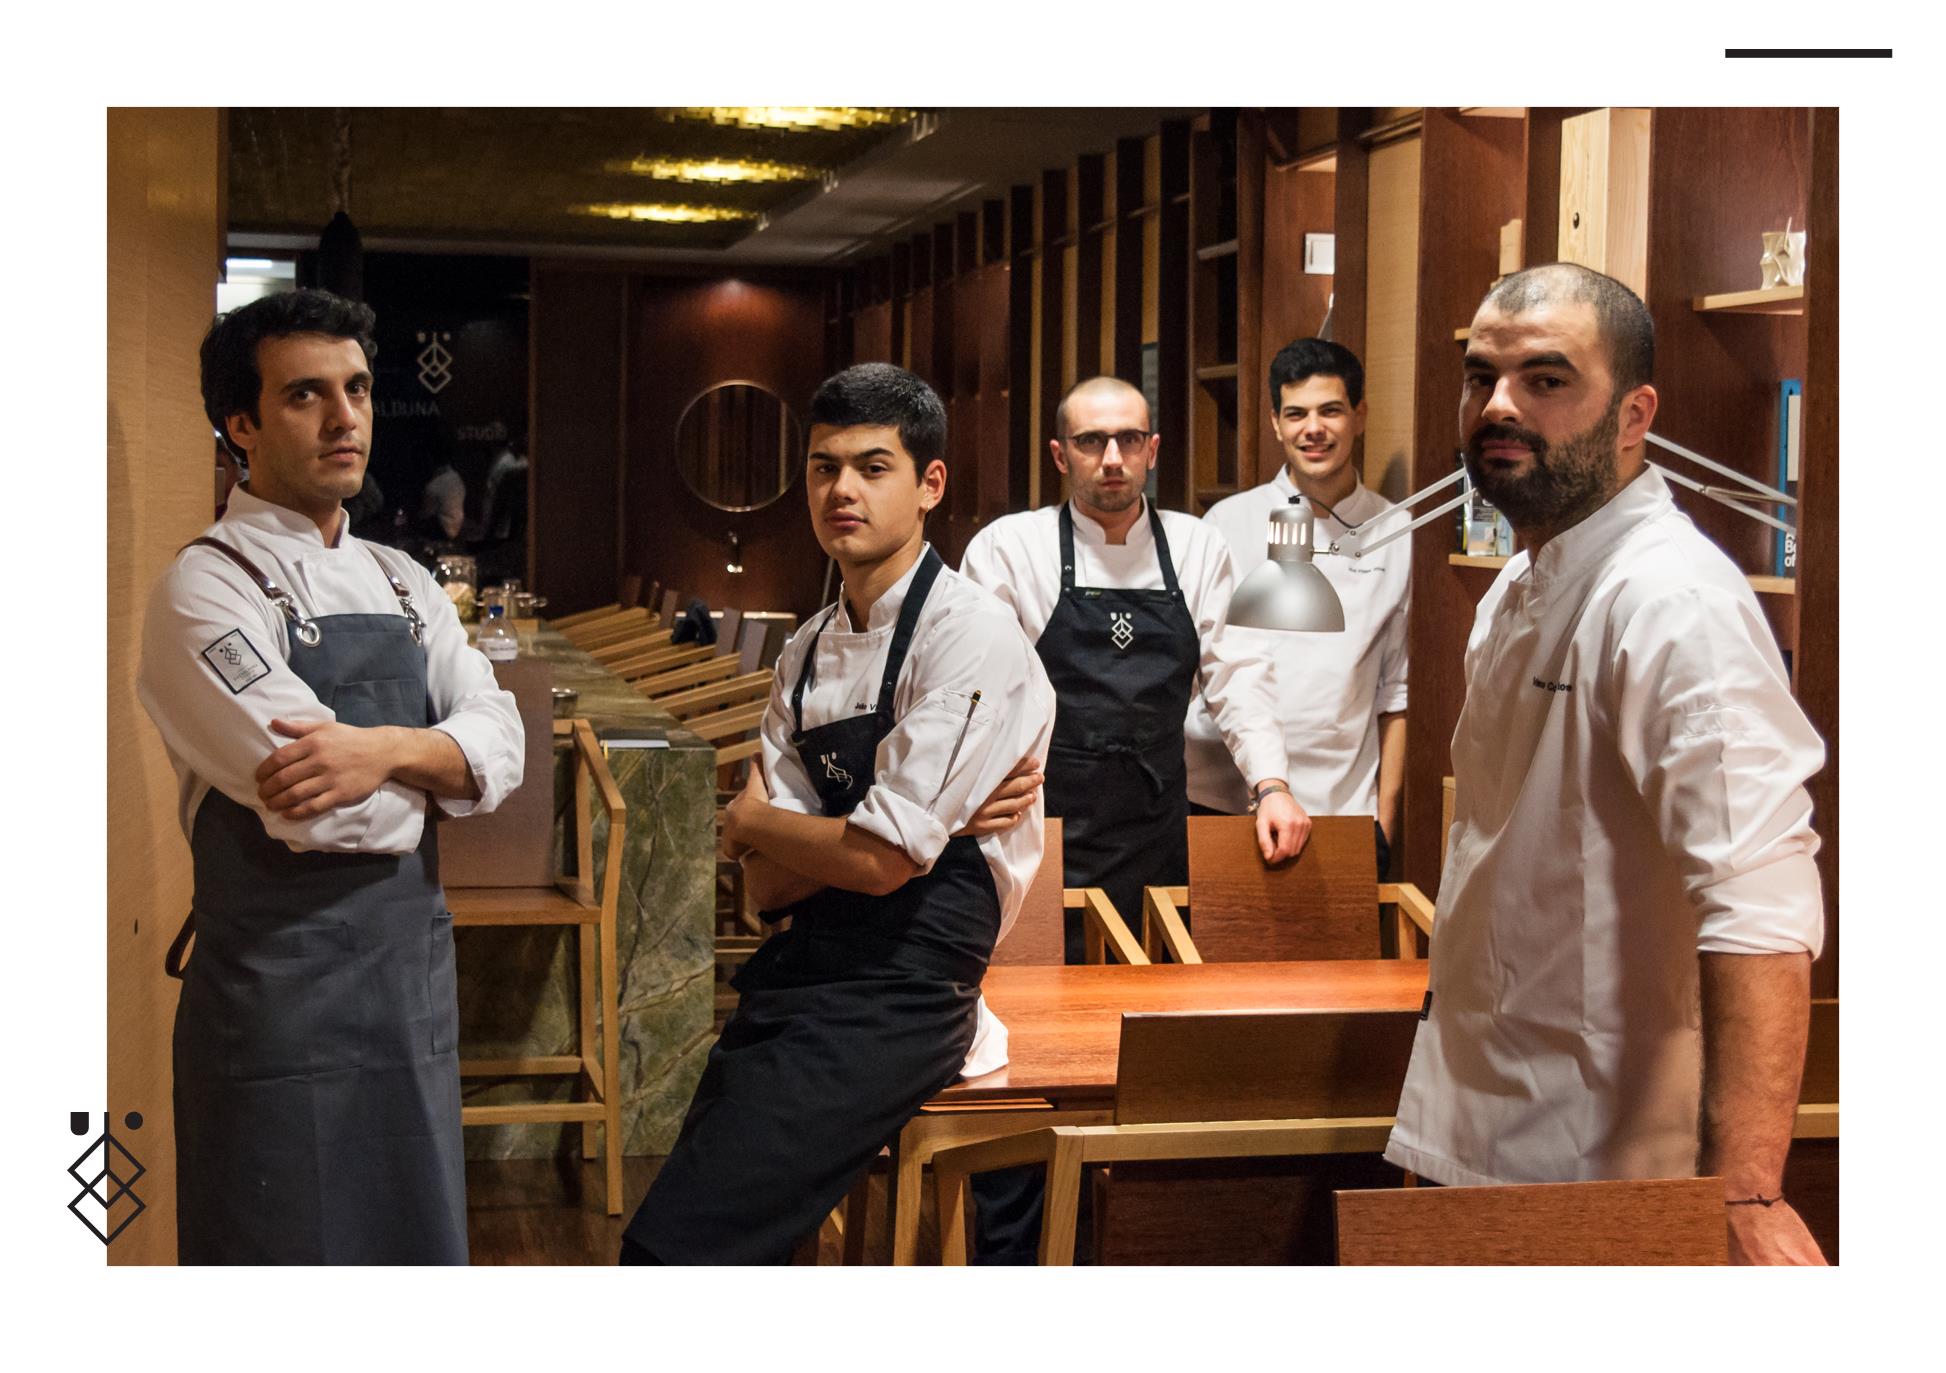 Restaurante Euskalduna Studio no Porto considerado um dos 100 melhores restaurantes da Europa